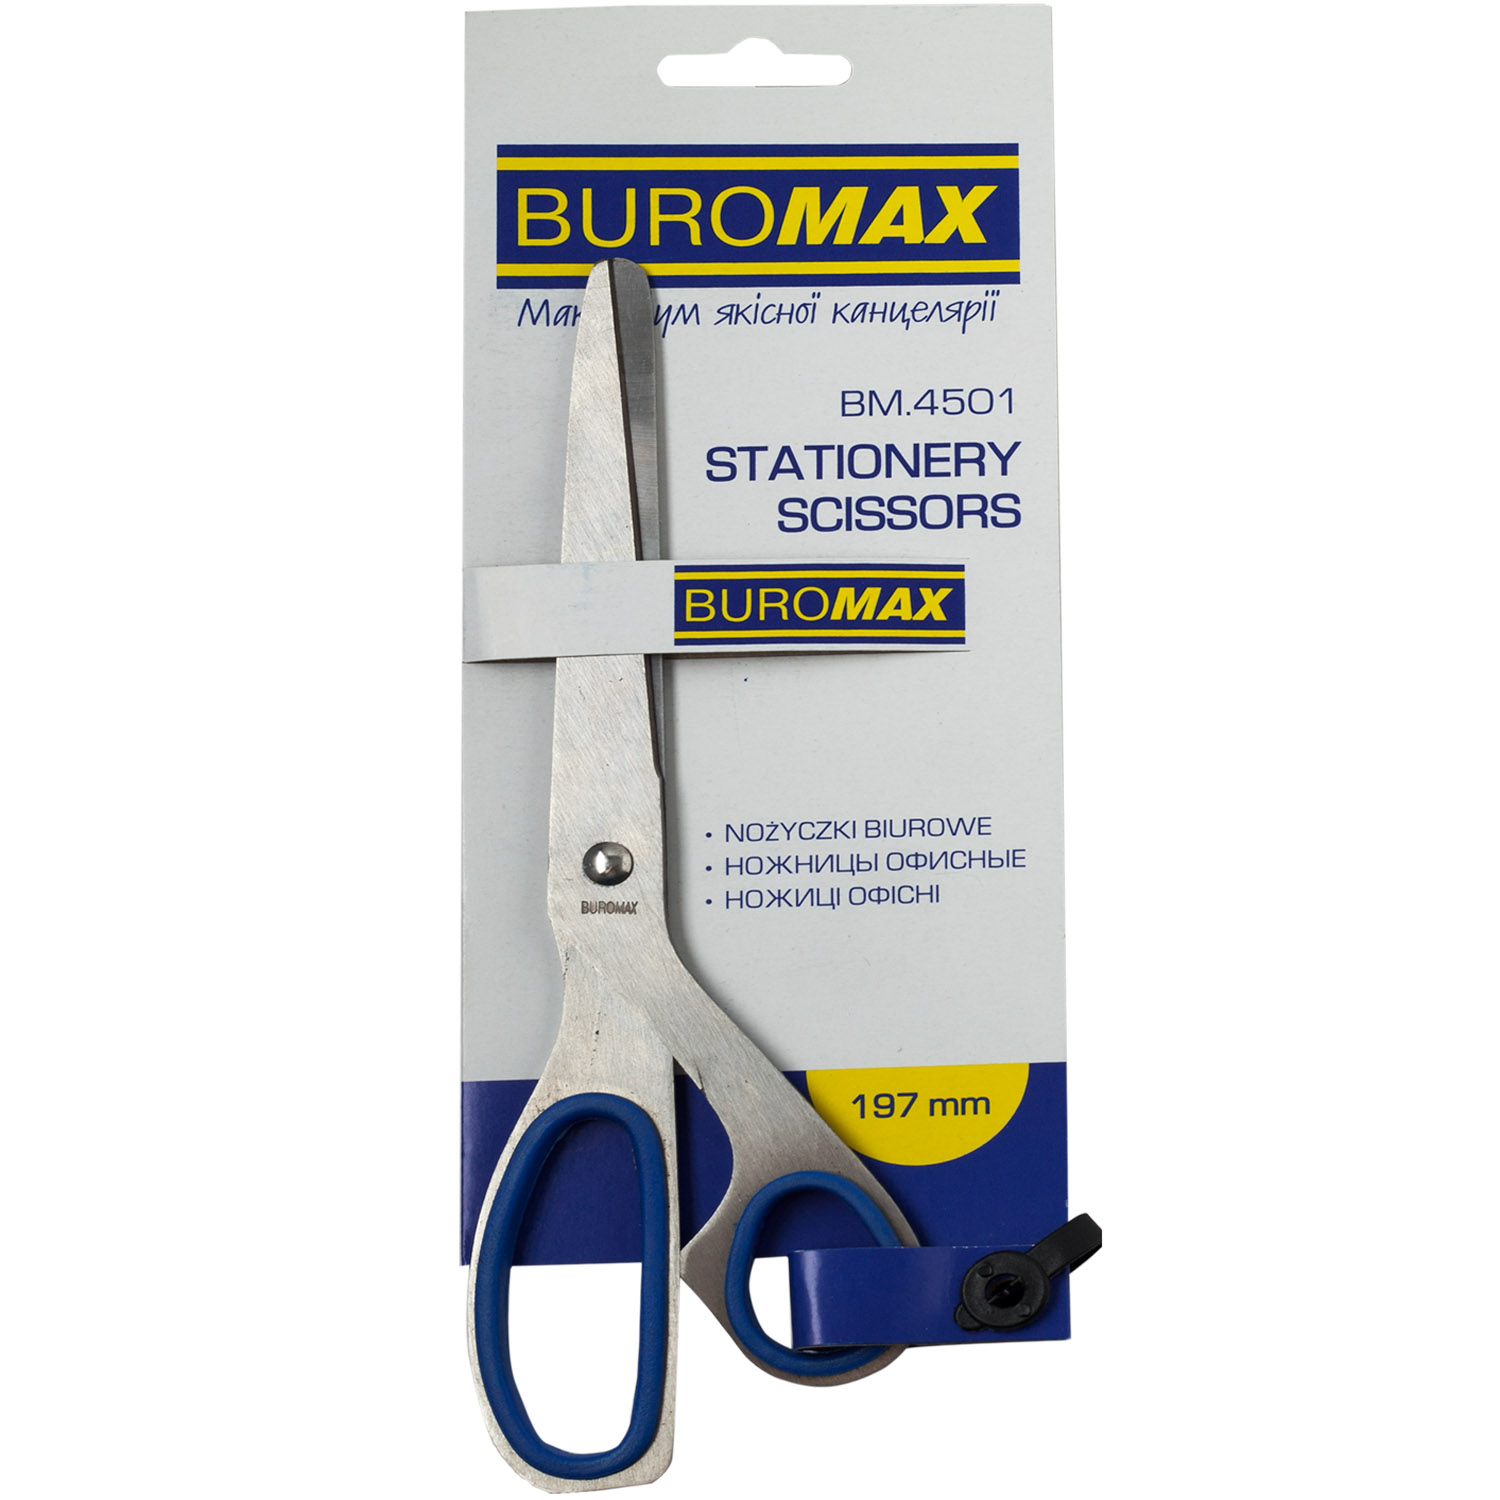 Ножницы Buromax цельнометаллические с ассиметричными резиновыми ручками 197 мм синие (BM.4501) - фото 1